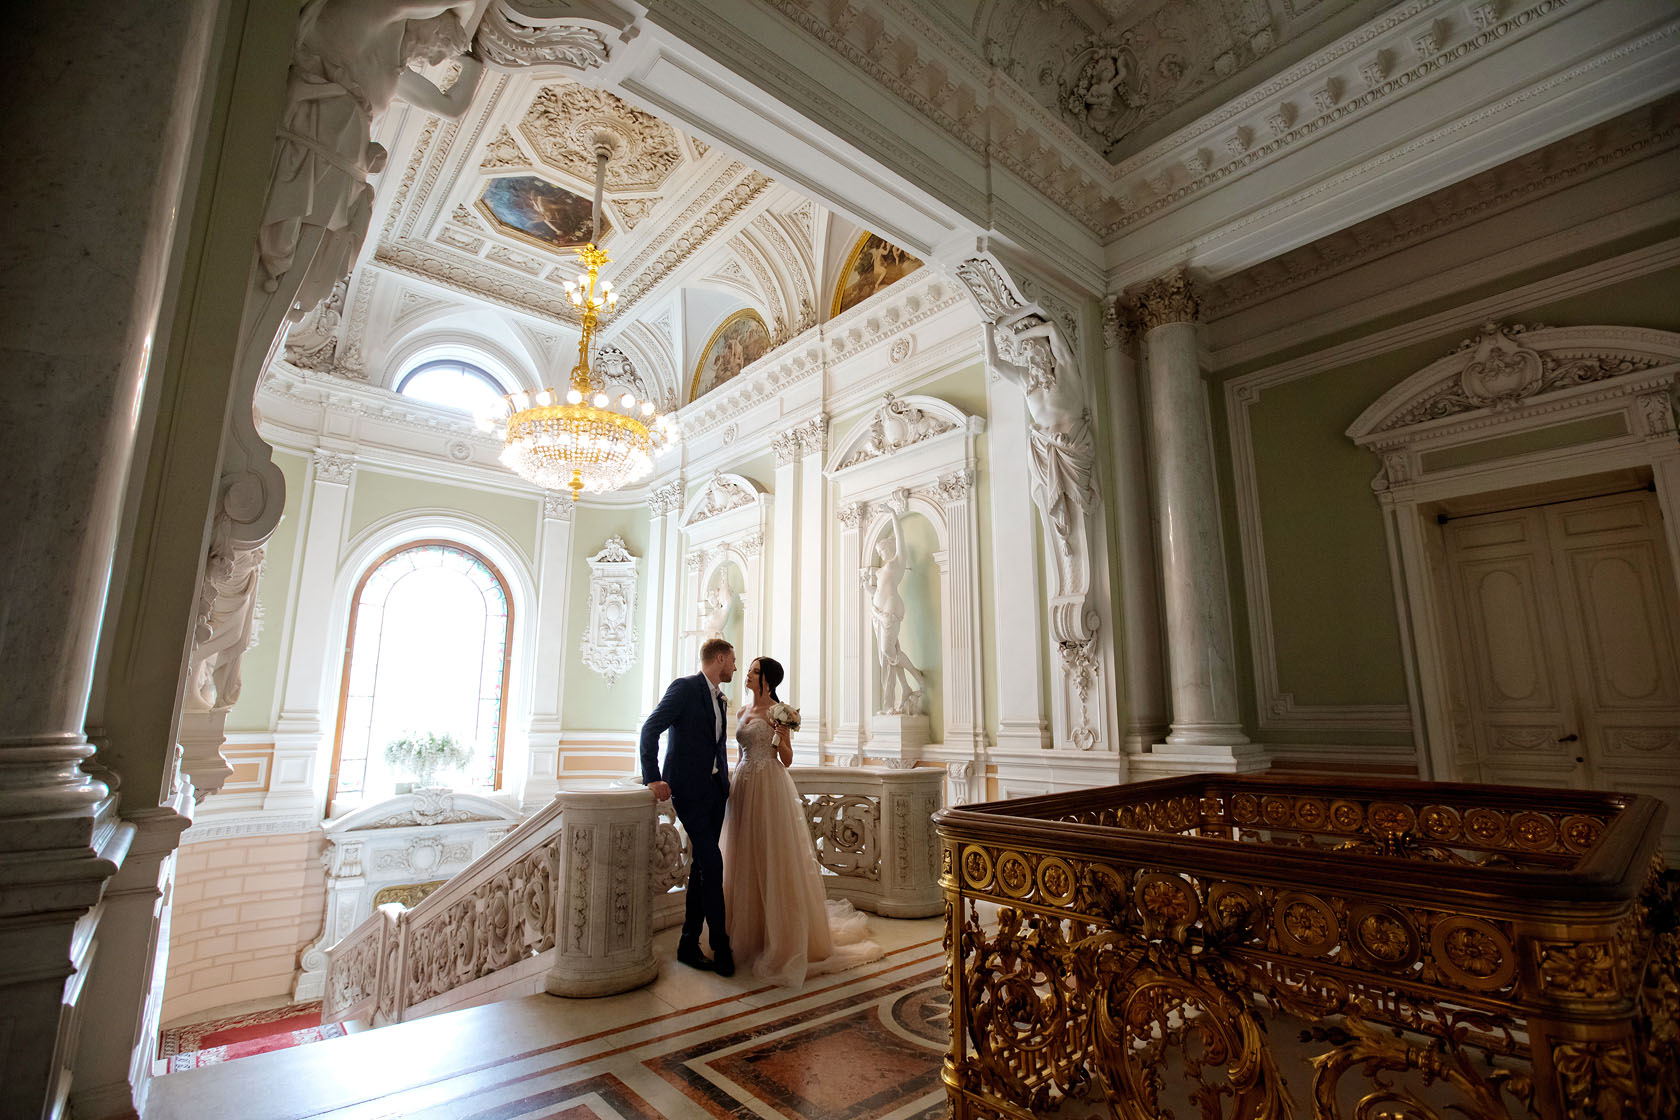 дворец бракосочетания 1 москва официальный сайт